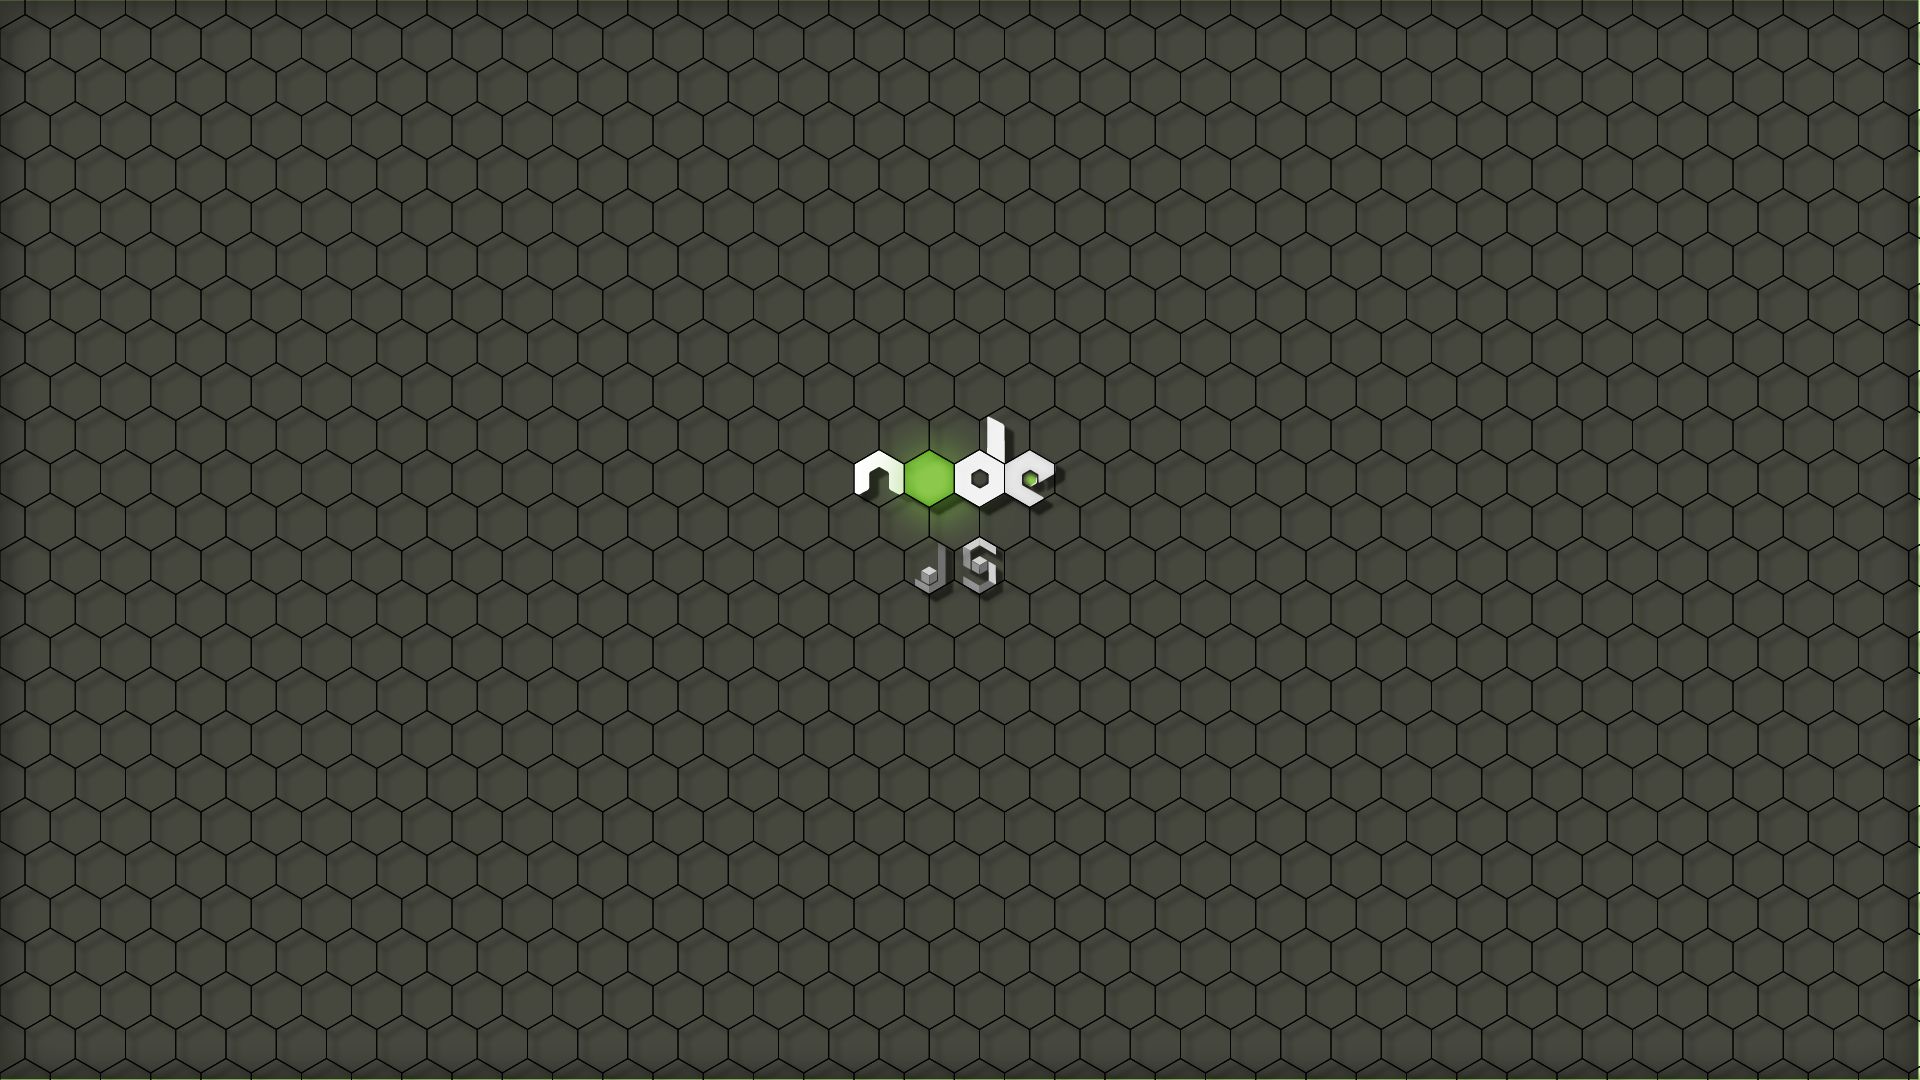 Node.js Wallpapers - Wallpaper Cave